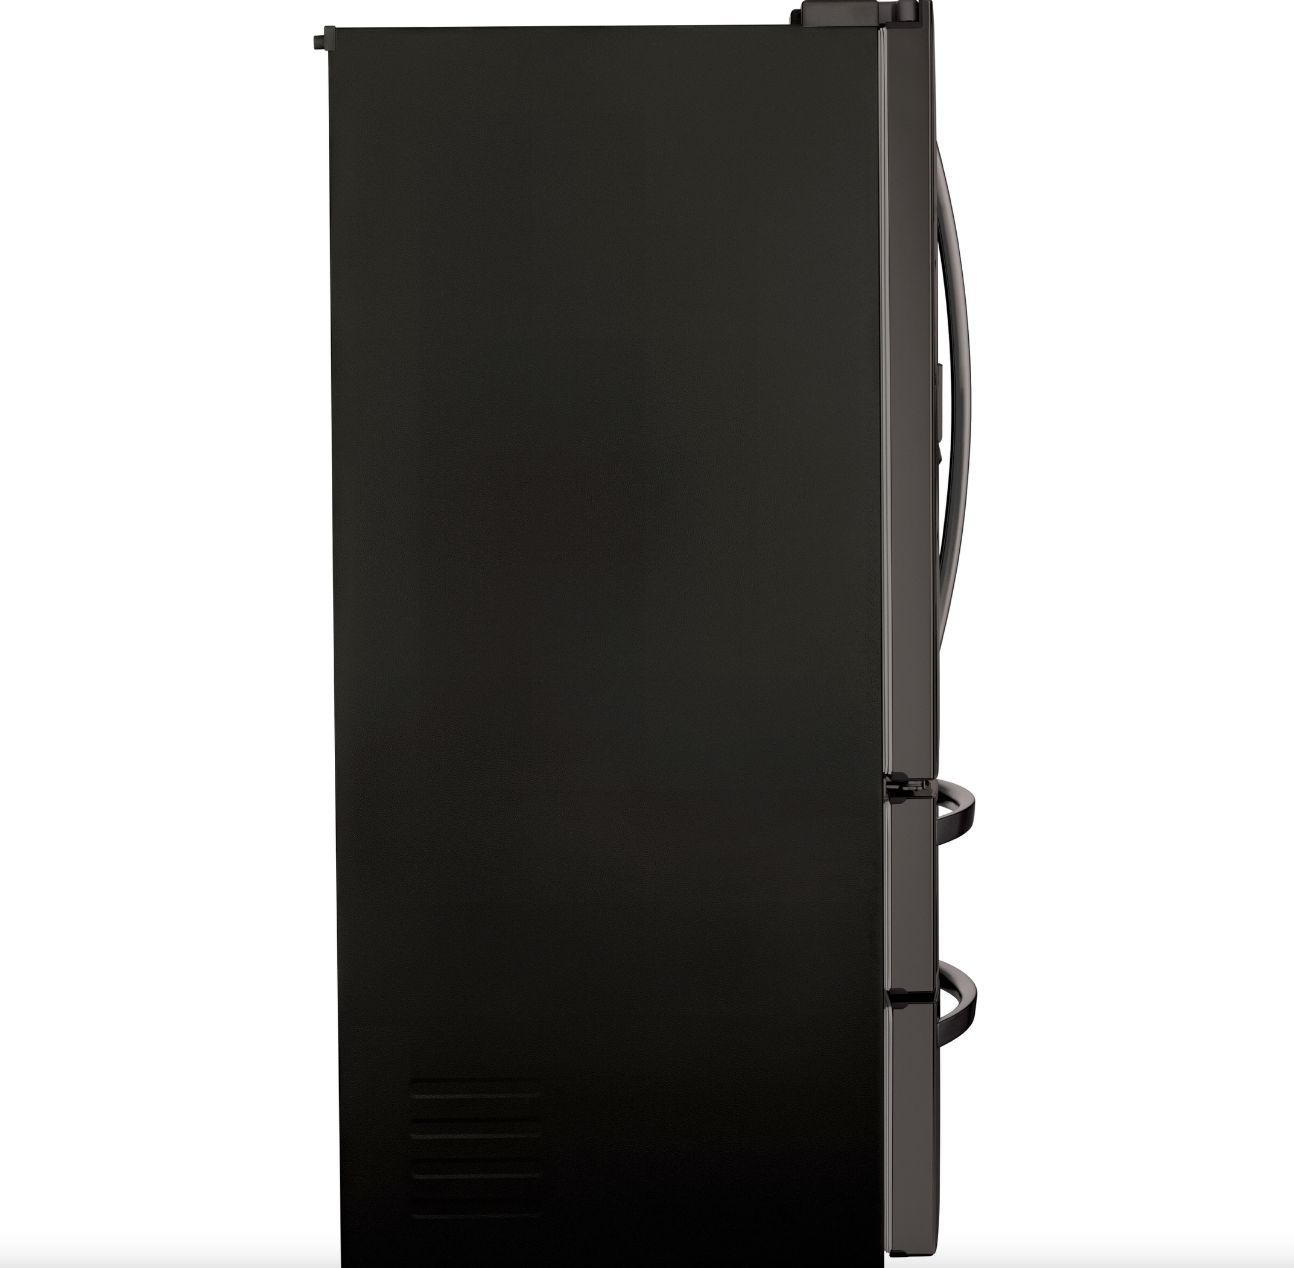 LG 36 Inch 4-Door French Door Refrigerator in Black Stainless Steel 28 Cu. Ft. (LMXS28626D)